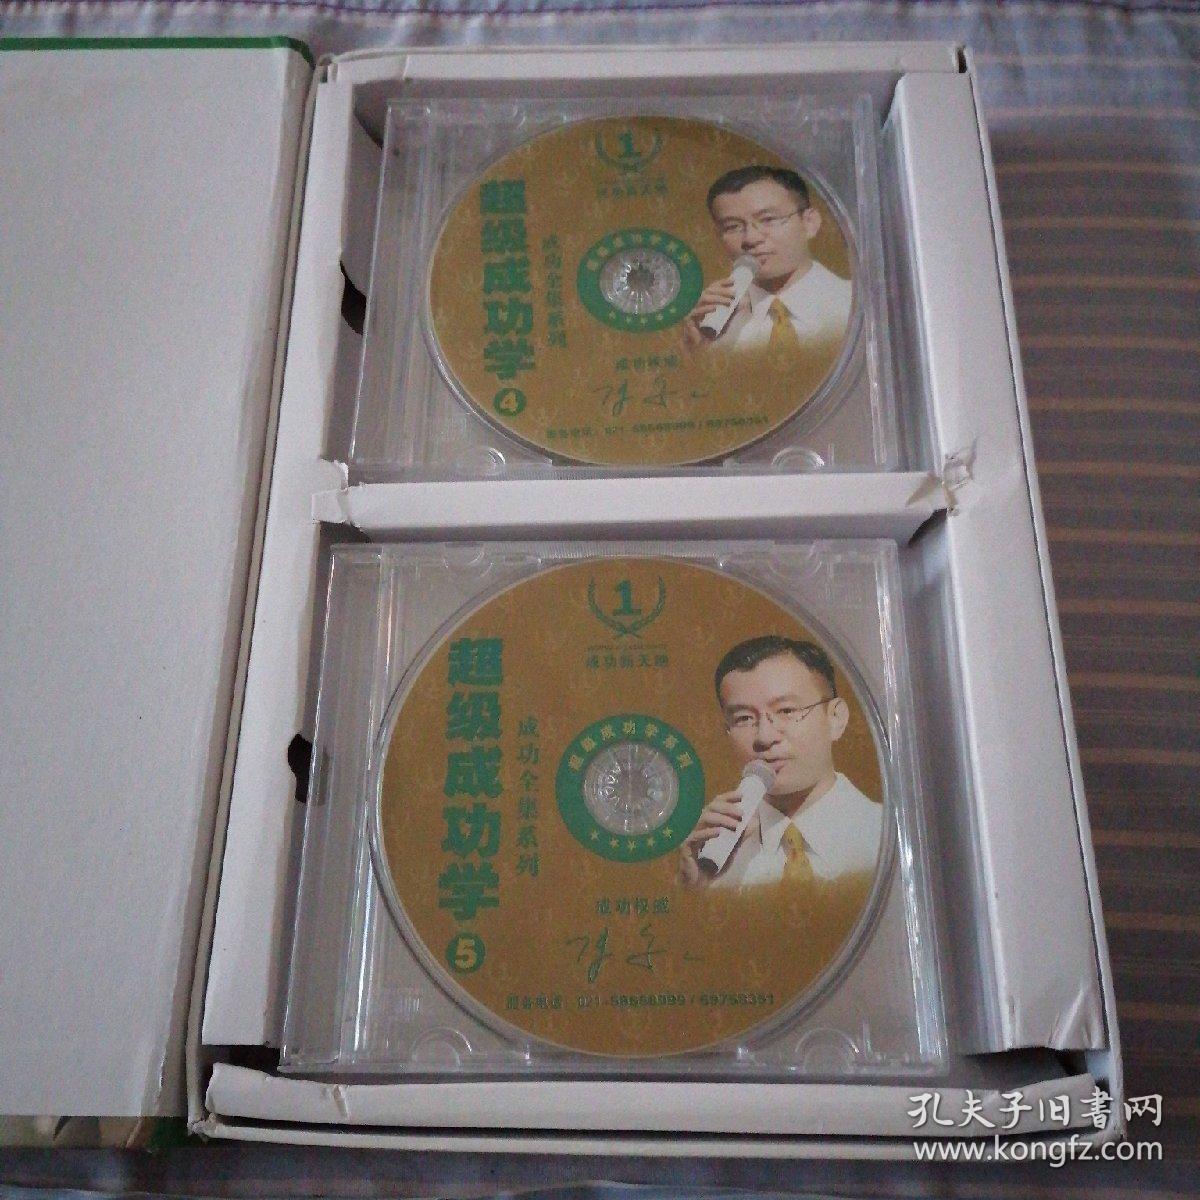 超级成功学 DVD 陈安之 成功全集系列  光盘6张